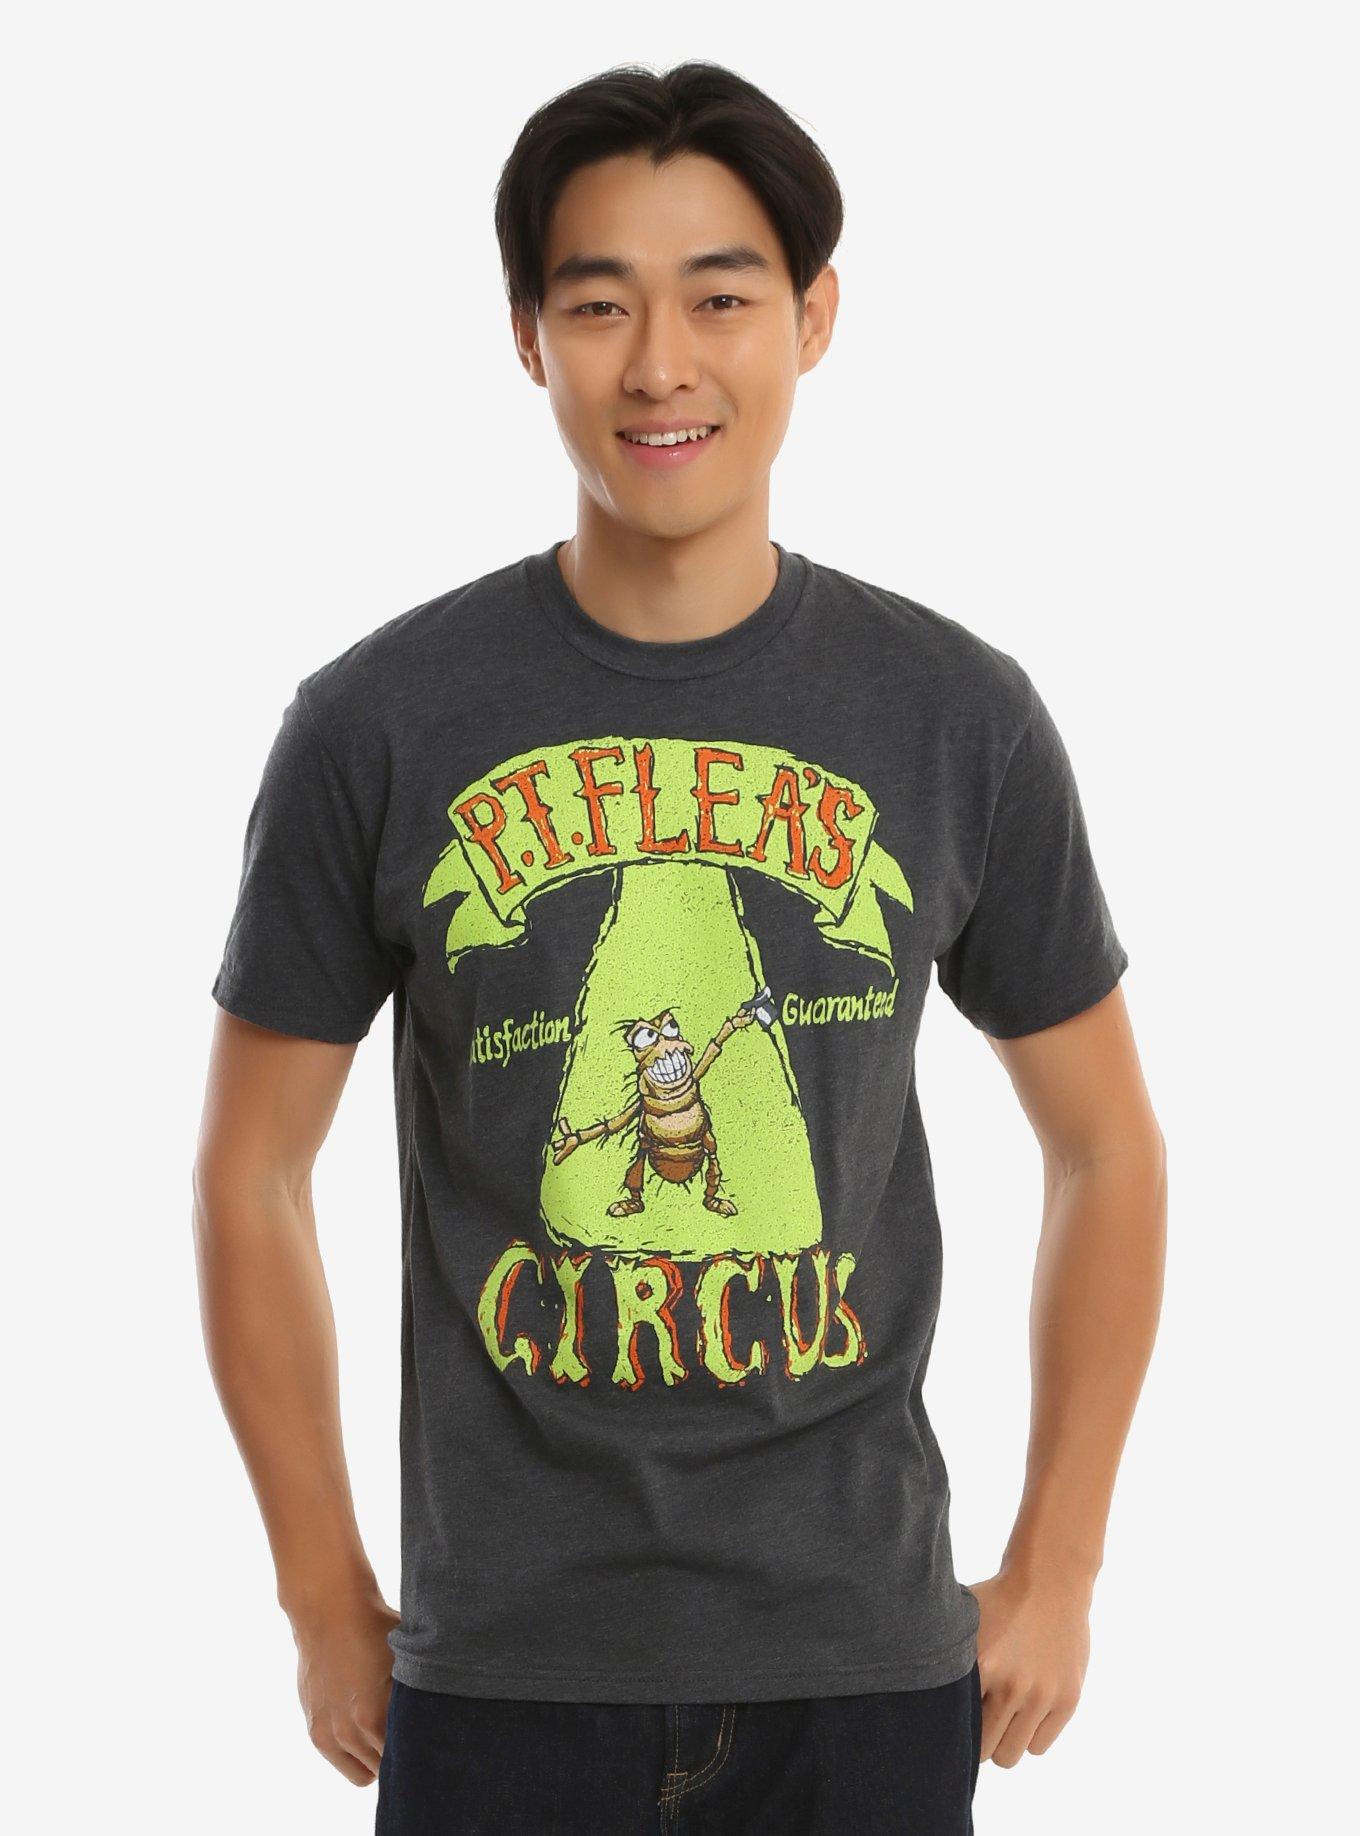 Disney Pixar A Bug's Life P.T. Flea's Circus T-Shirt - BoxLunch Exclusive, GREY, hi-res